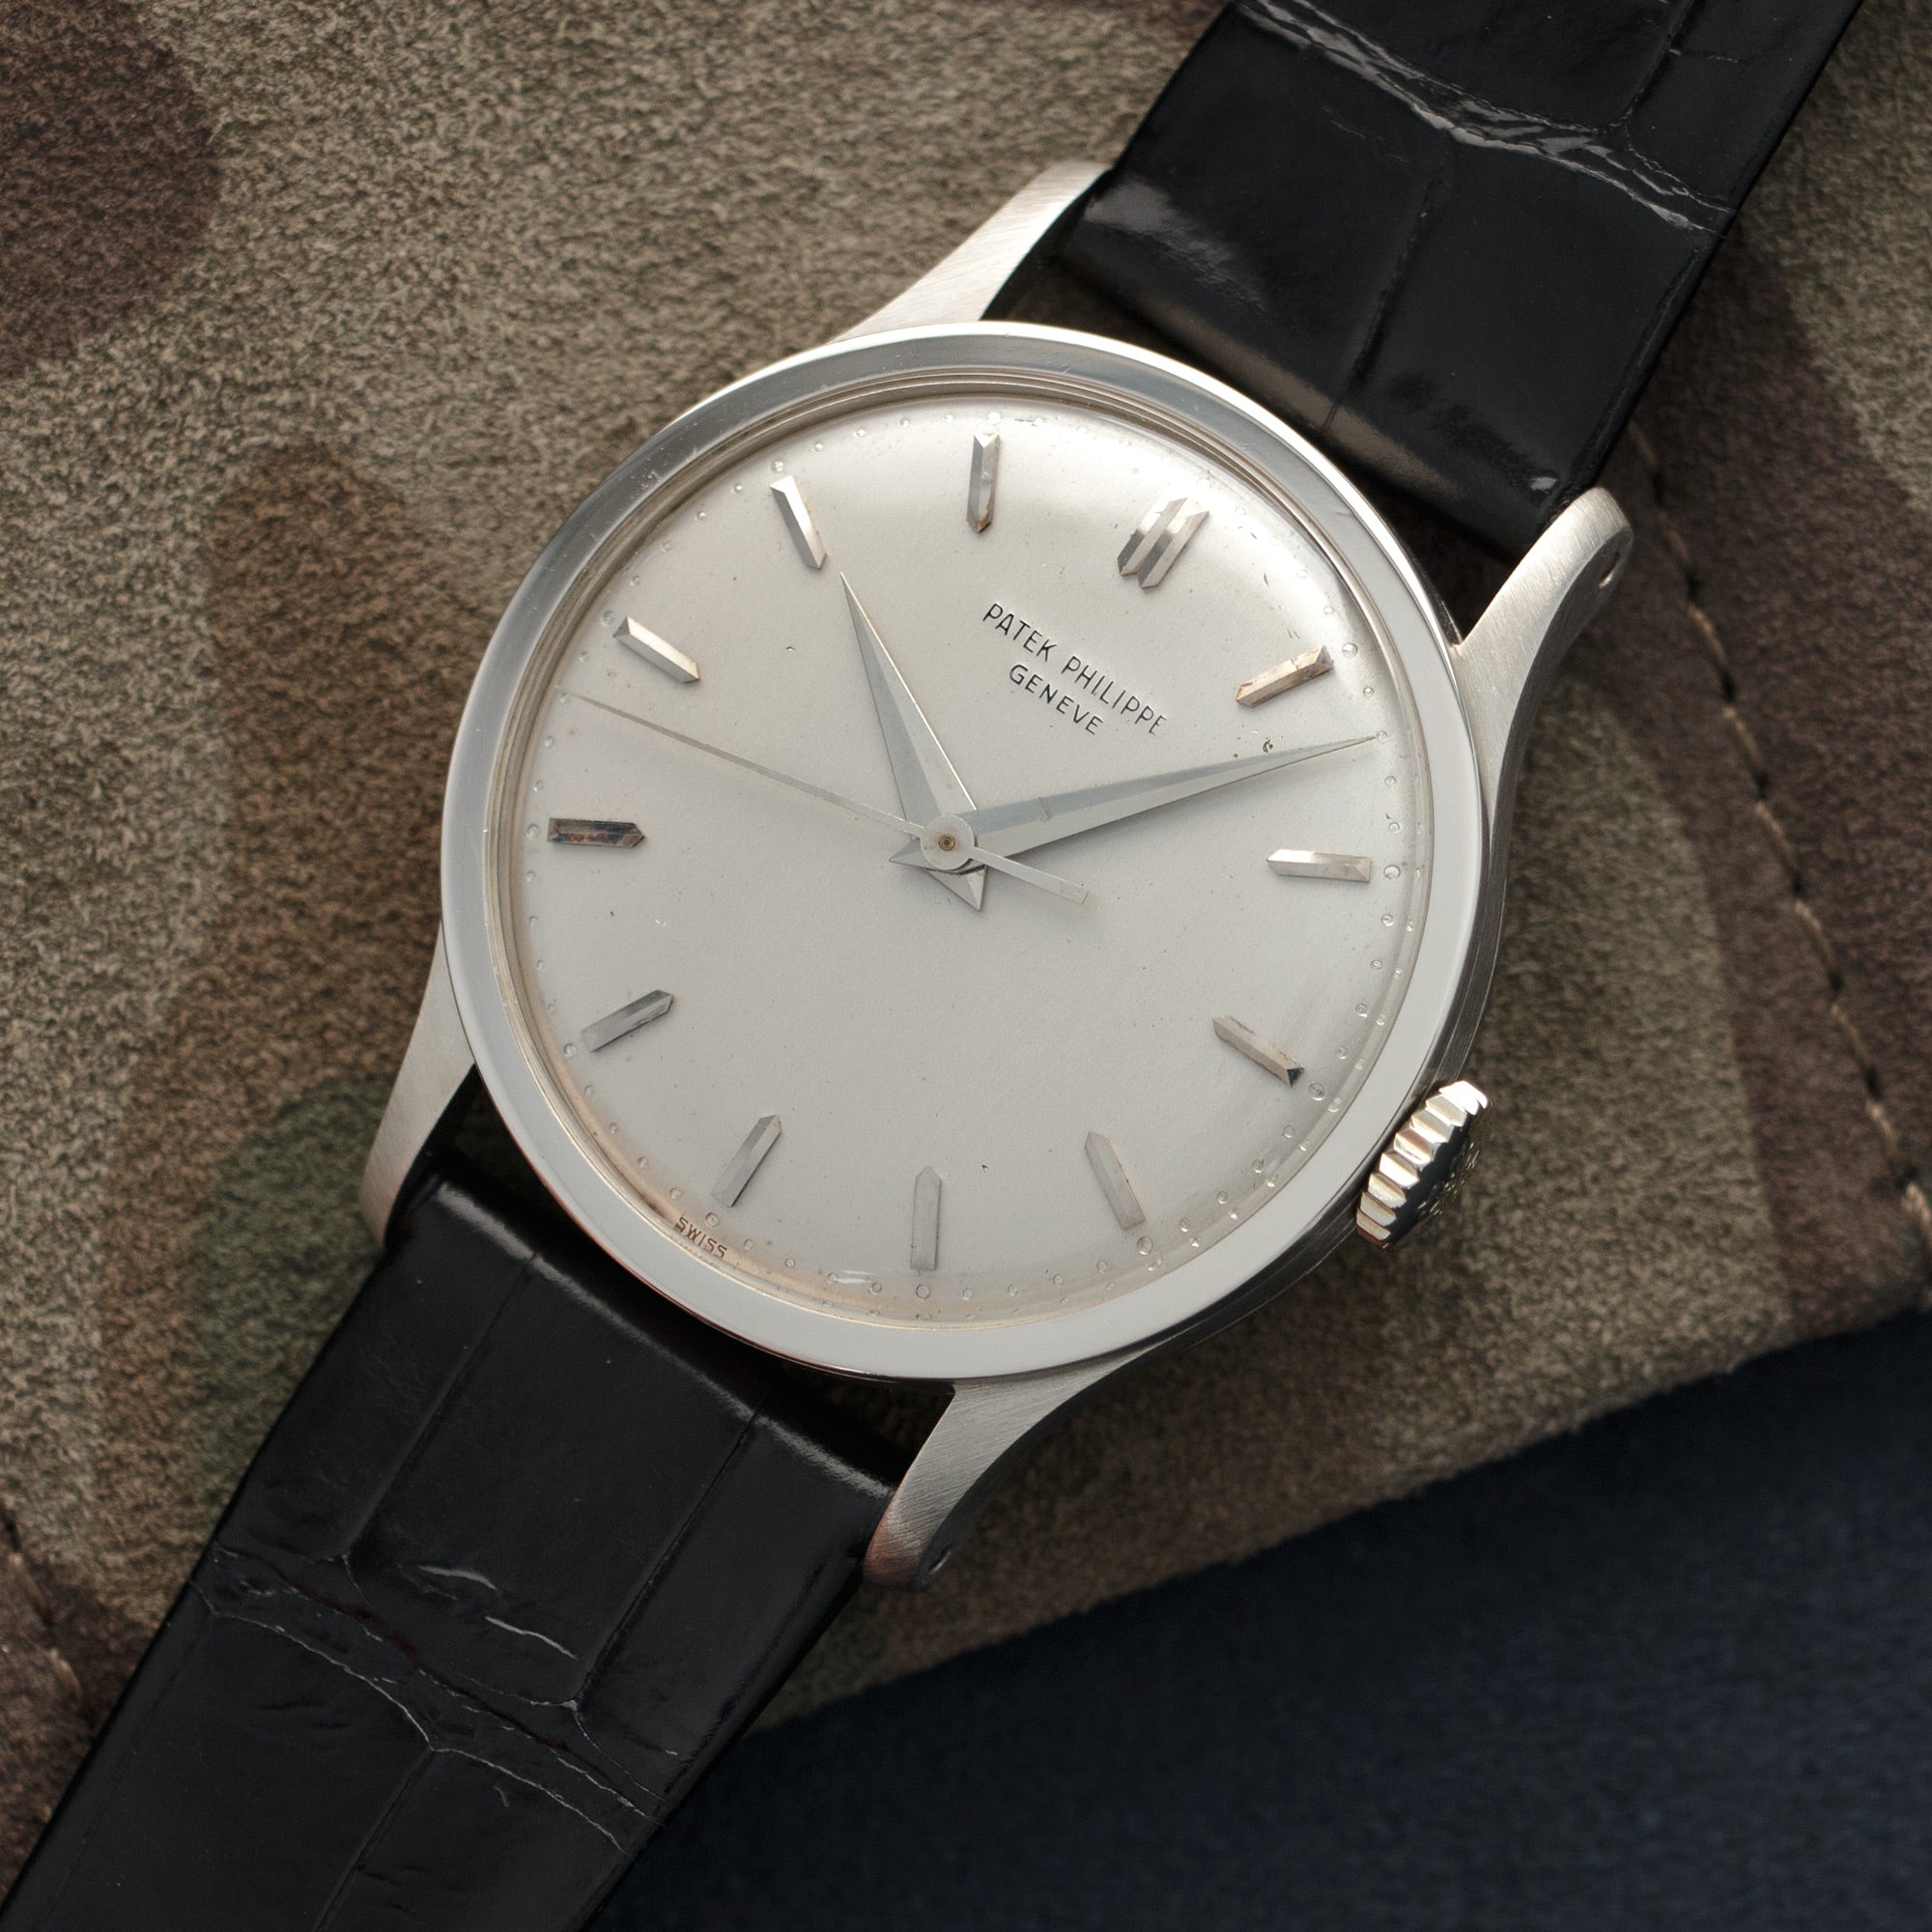 Patek Philippe - Patek Philippe White Gold Calatrava Watch, Ref. 570 - The Keystone Watches